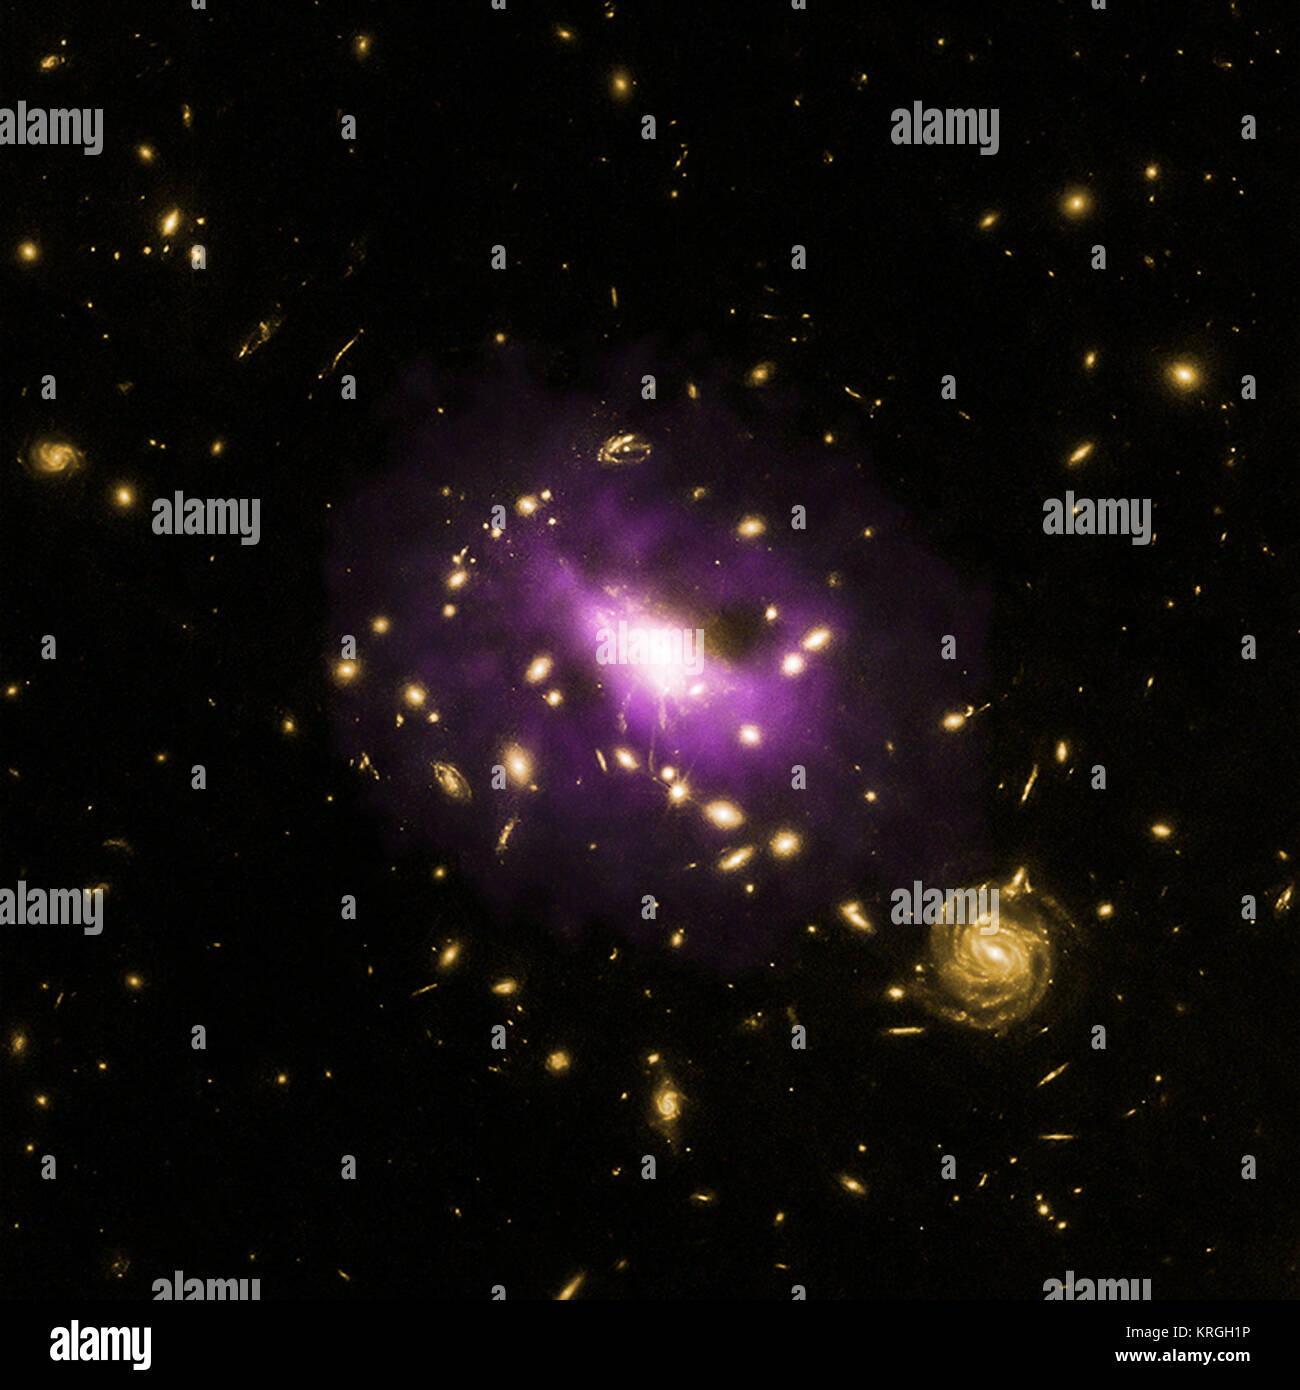 Haben Astronomen der NASA Chandra X-ray Observatory und anderen Teleskopen zu offenbaren eine der mächtigsten schwarzen Löcher bekannt. Das supermassive Schwarze Loch befindet sich im Zentrum eines Galaxienhaufens namens RX J 1532.9 +3021 liegt etwa 3,9 Milliarden Lichtjahre von der Erde entfernt. Das Bild hier ist ein Verbund von X-ray Daten von Chandra enthüllt heißes Gas im Cluster in Purpur und optischen Daten aus dem Hubble Space Telescope, Galaxien in Gelb. Supersonic Jets durch das Schwarze Loch erzeugt haben in das heiße Gas gebohrt und schob sie beiseite, bilden die große Hohlräume, die auf beiden Seiten des gesehen werden kann. Stockfoto